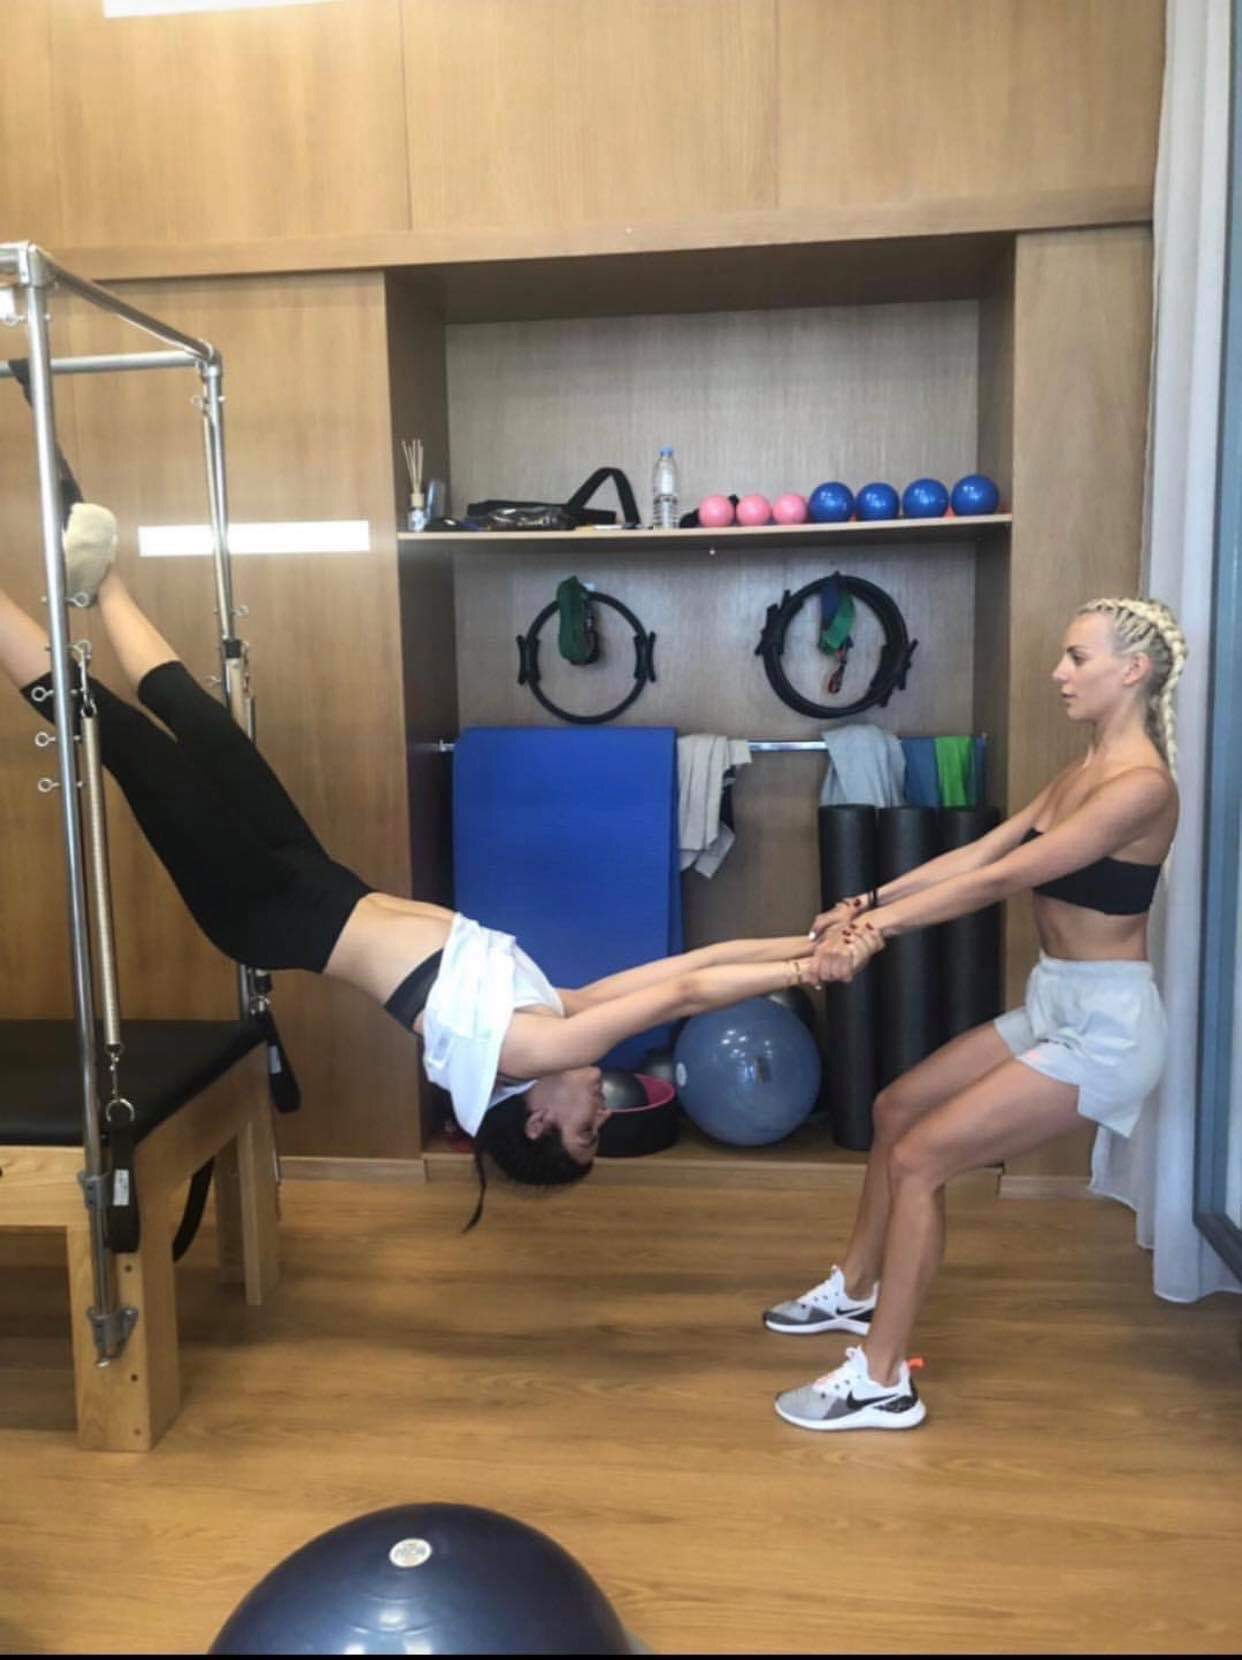 Τόνια Σωτηροπούλου: Η αγαπημένη της γυμναστική για τέλειο σώμα και τα μυστικά της προπόνησής της! Δείτε φωτογραφίες